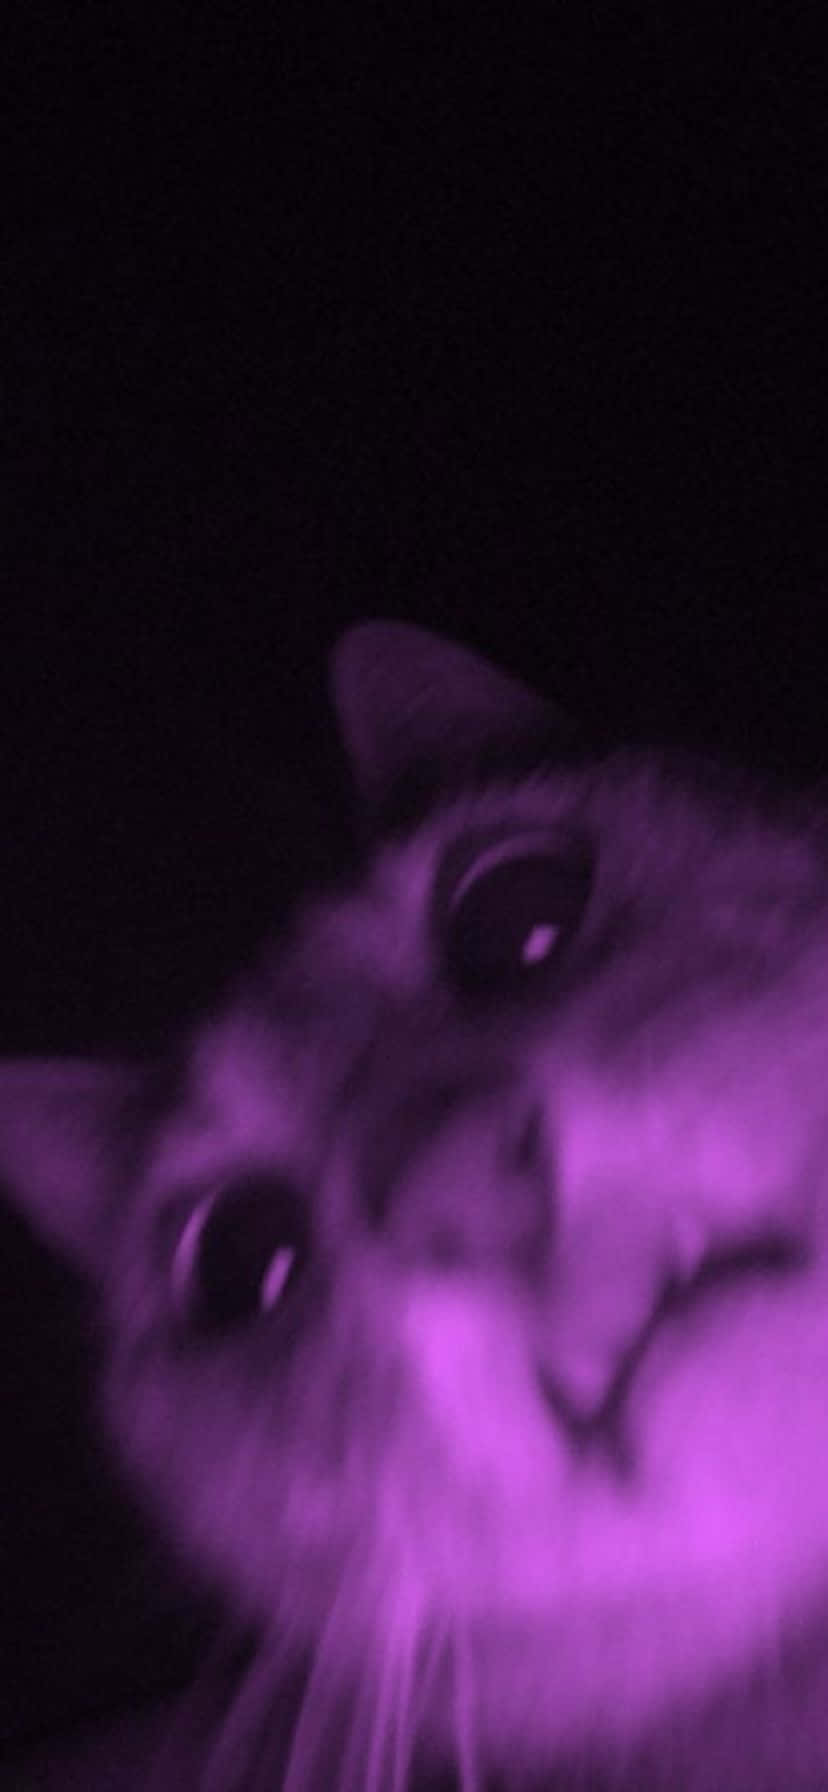 Purple Hued Cat Closeup.jpg Wallpaper